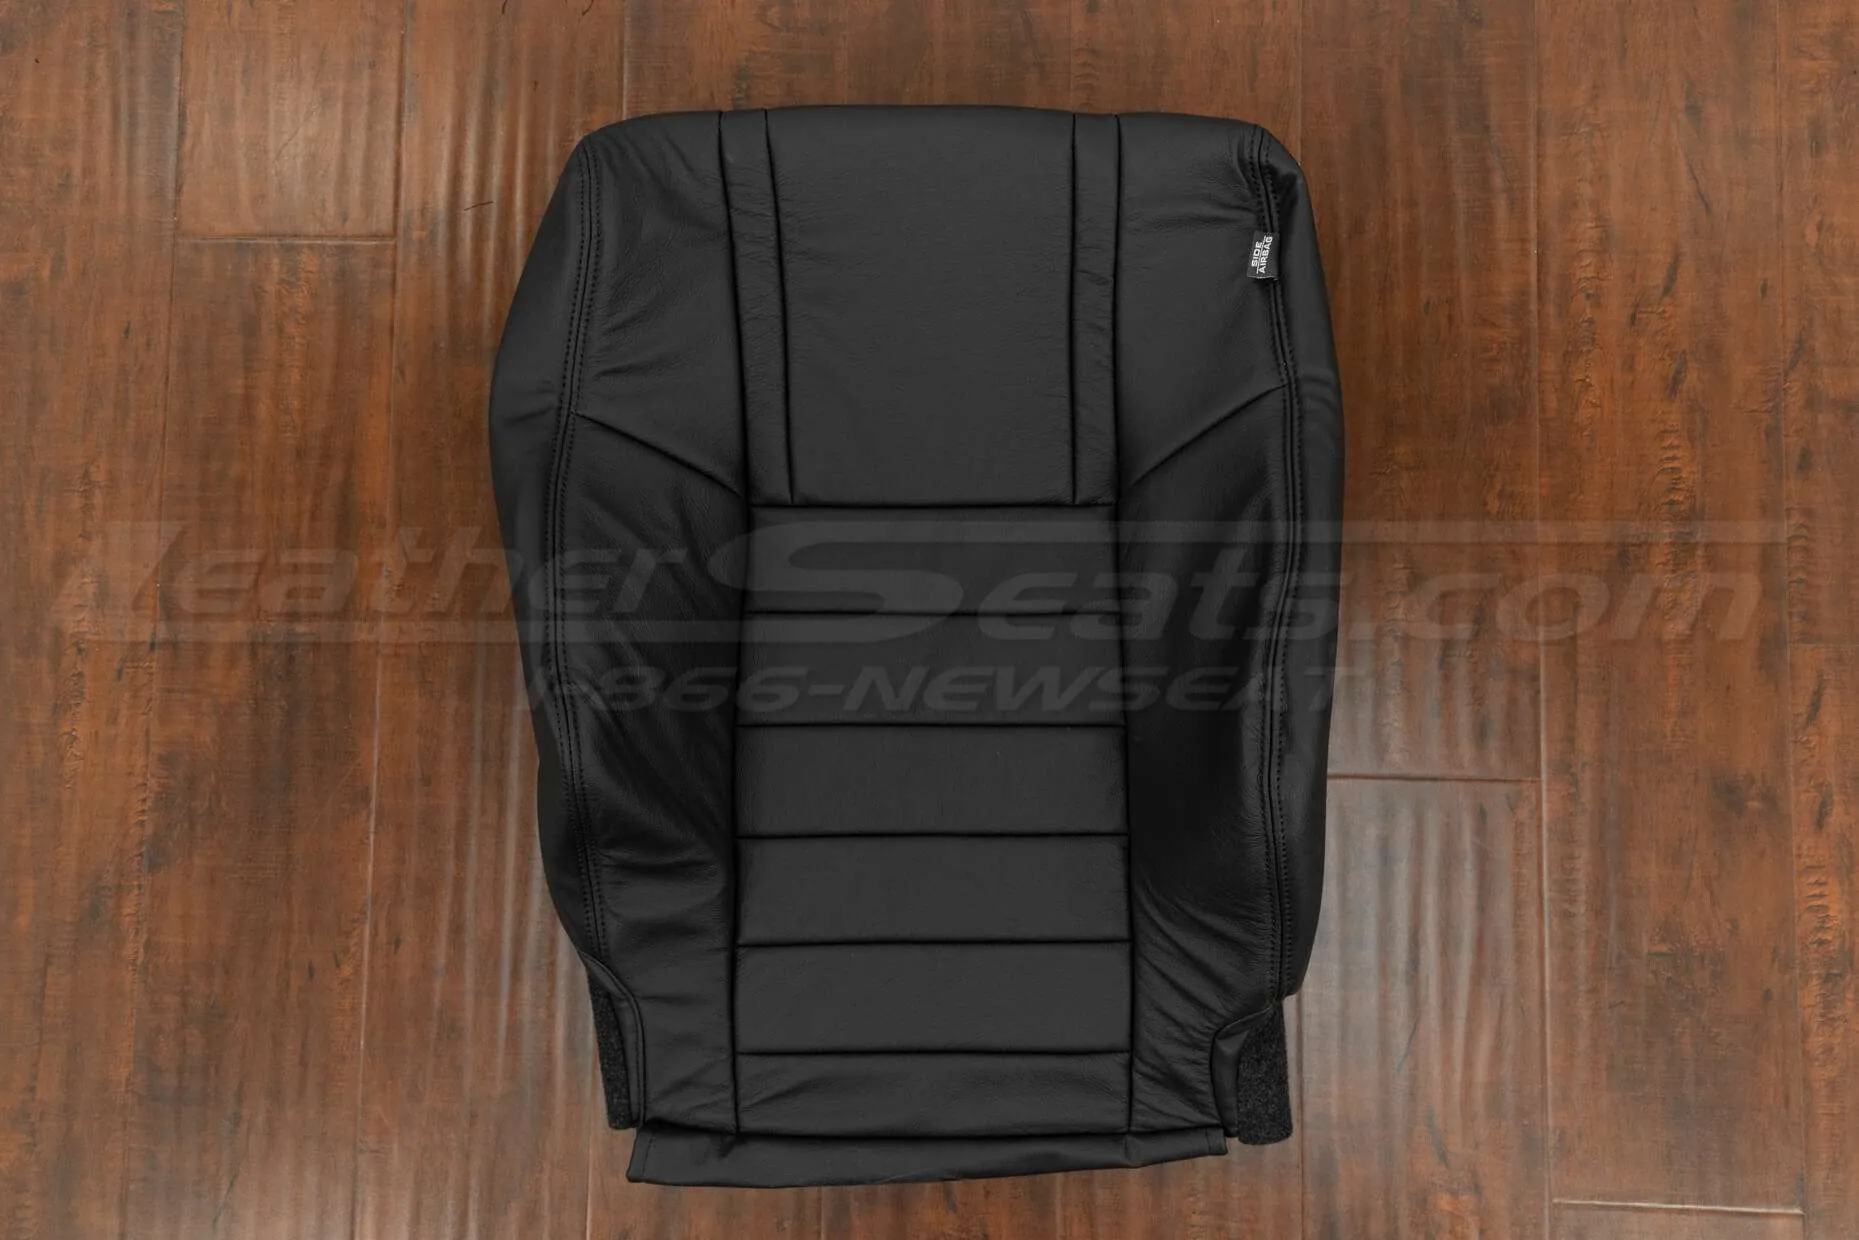 Dodge Challenger RT Front Backrest Upholstery